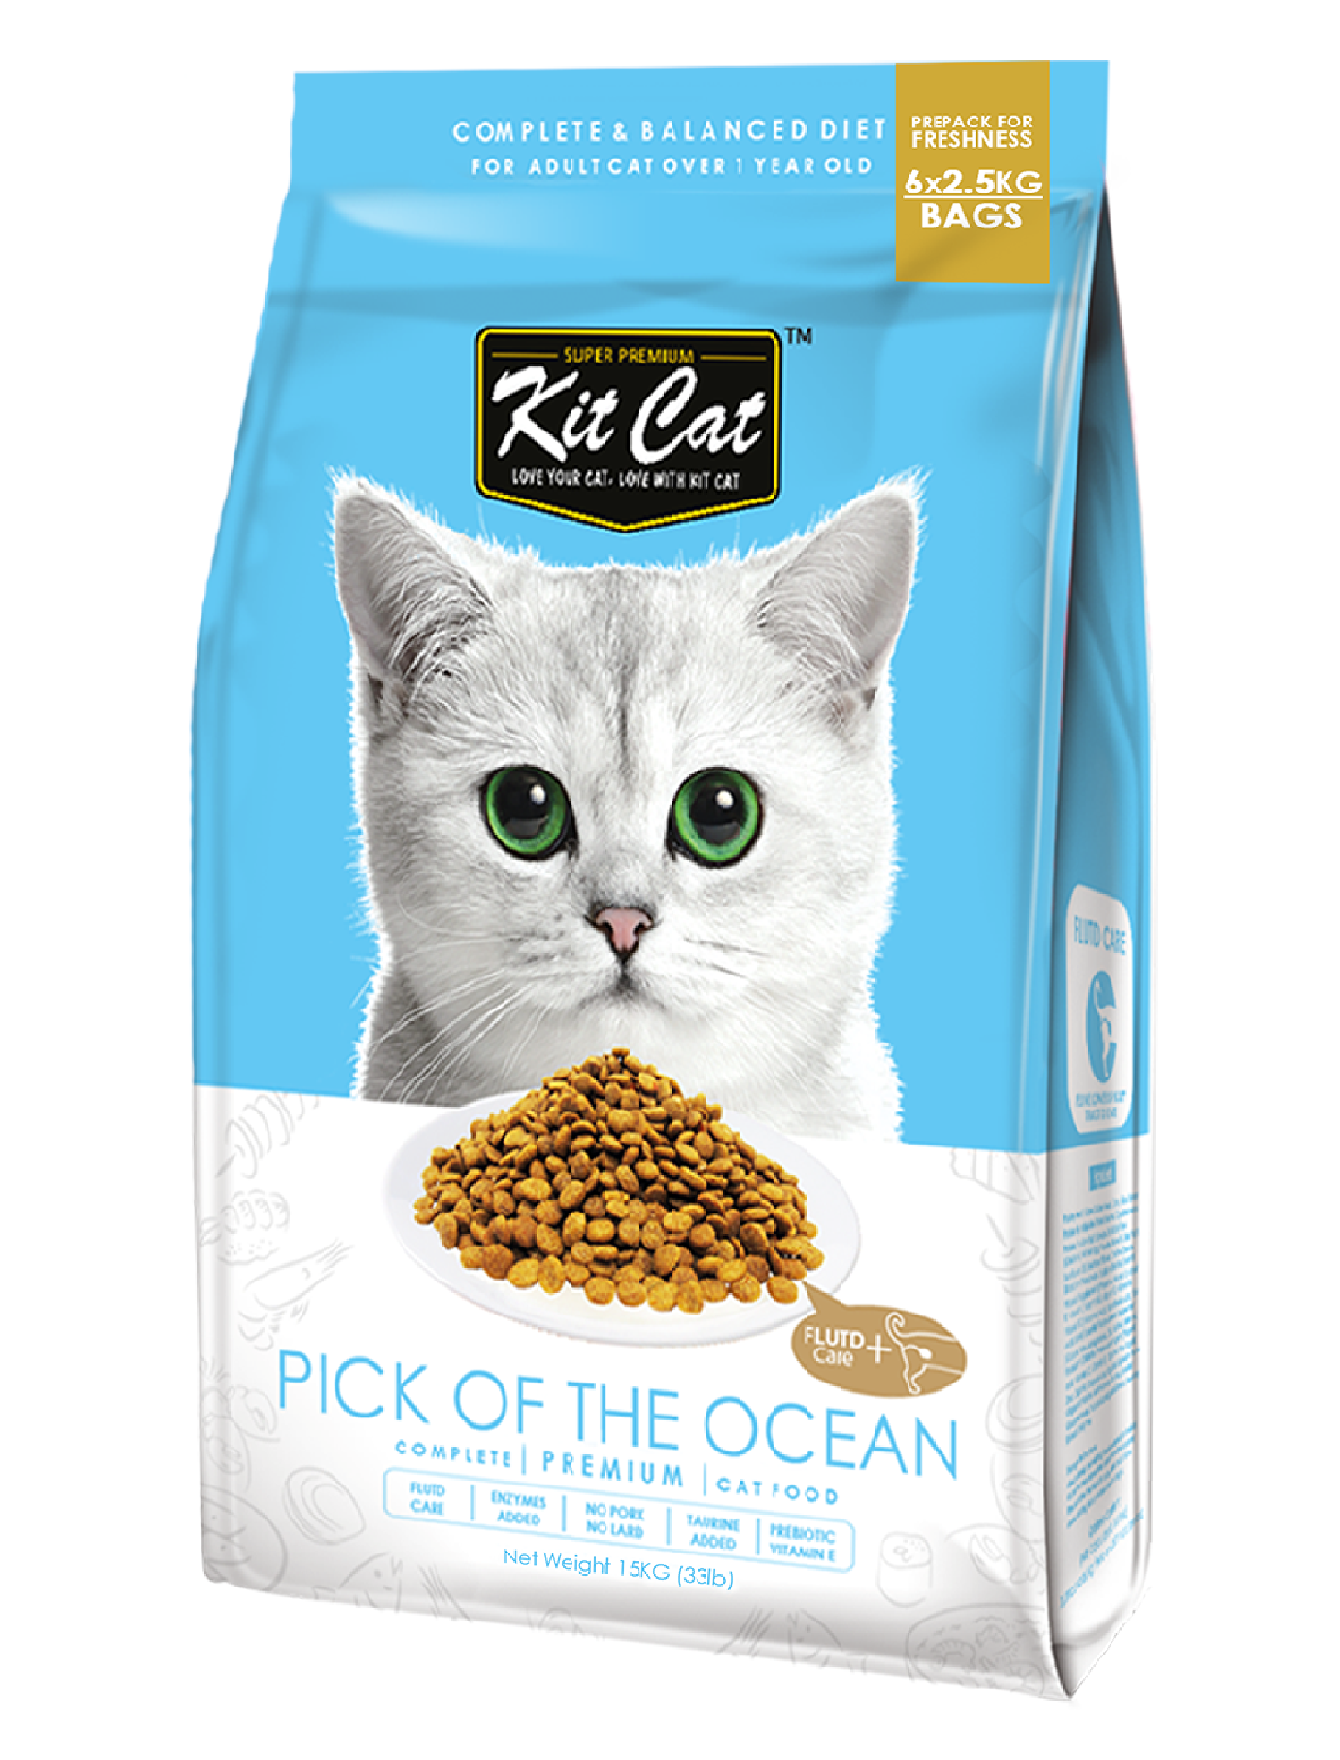 Купить пакетик корма для кошки. Корм. Корм для кошек. Пакет корма для кошек. Cat food корм для кошек.